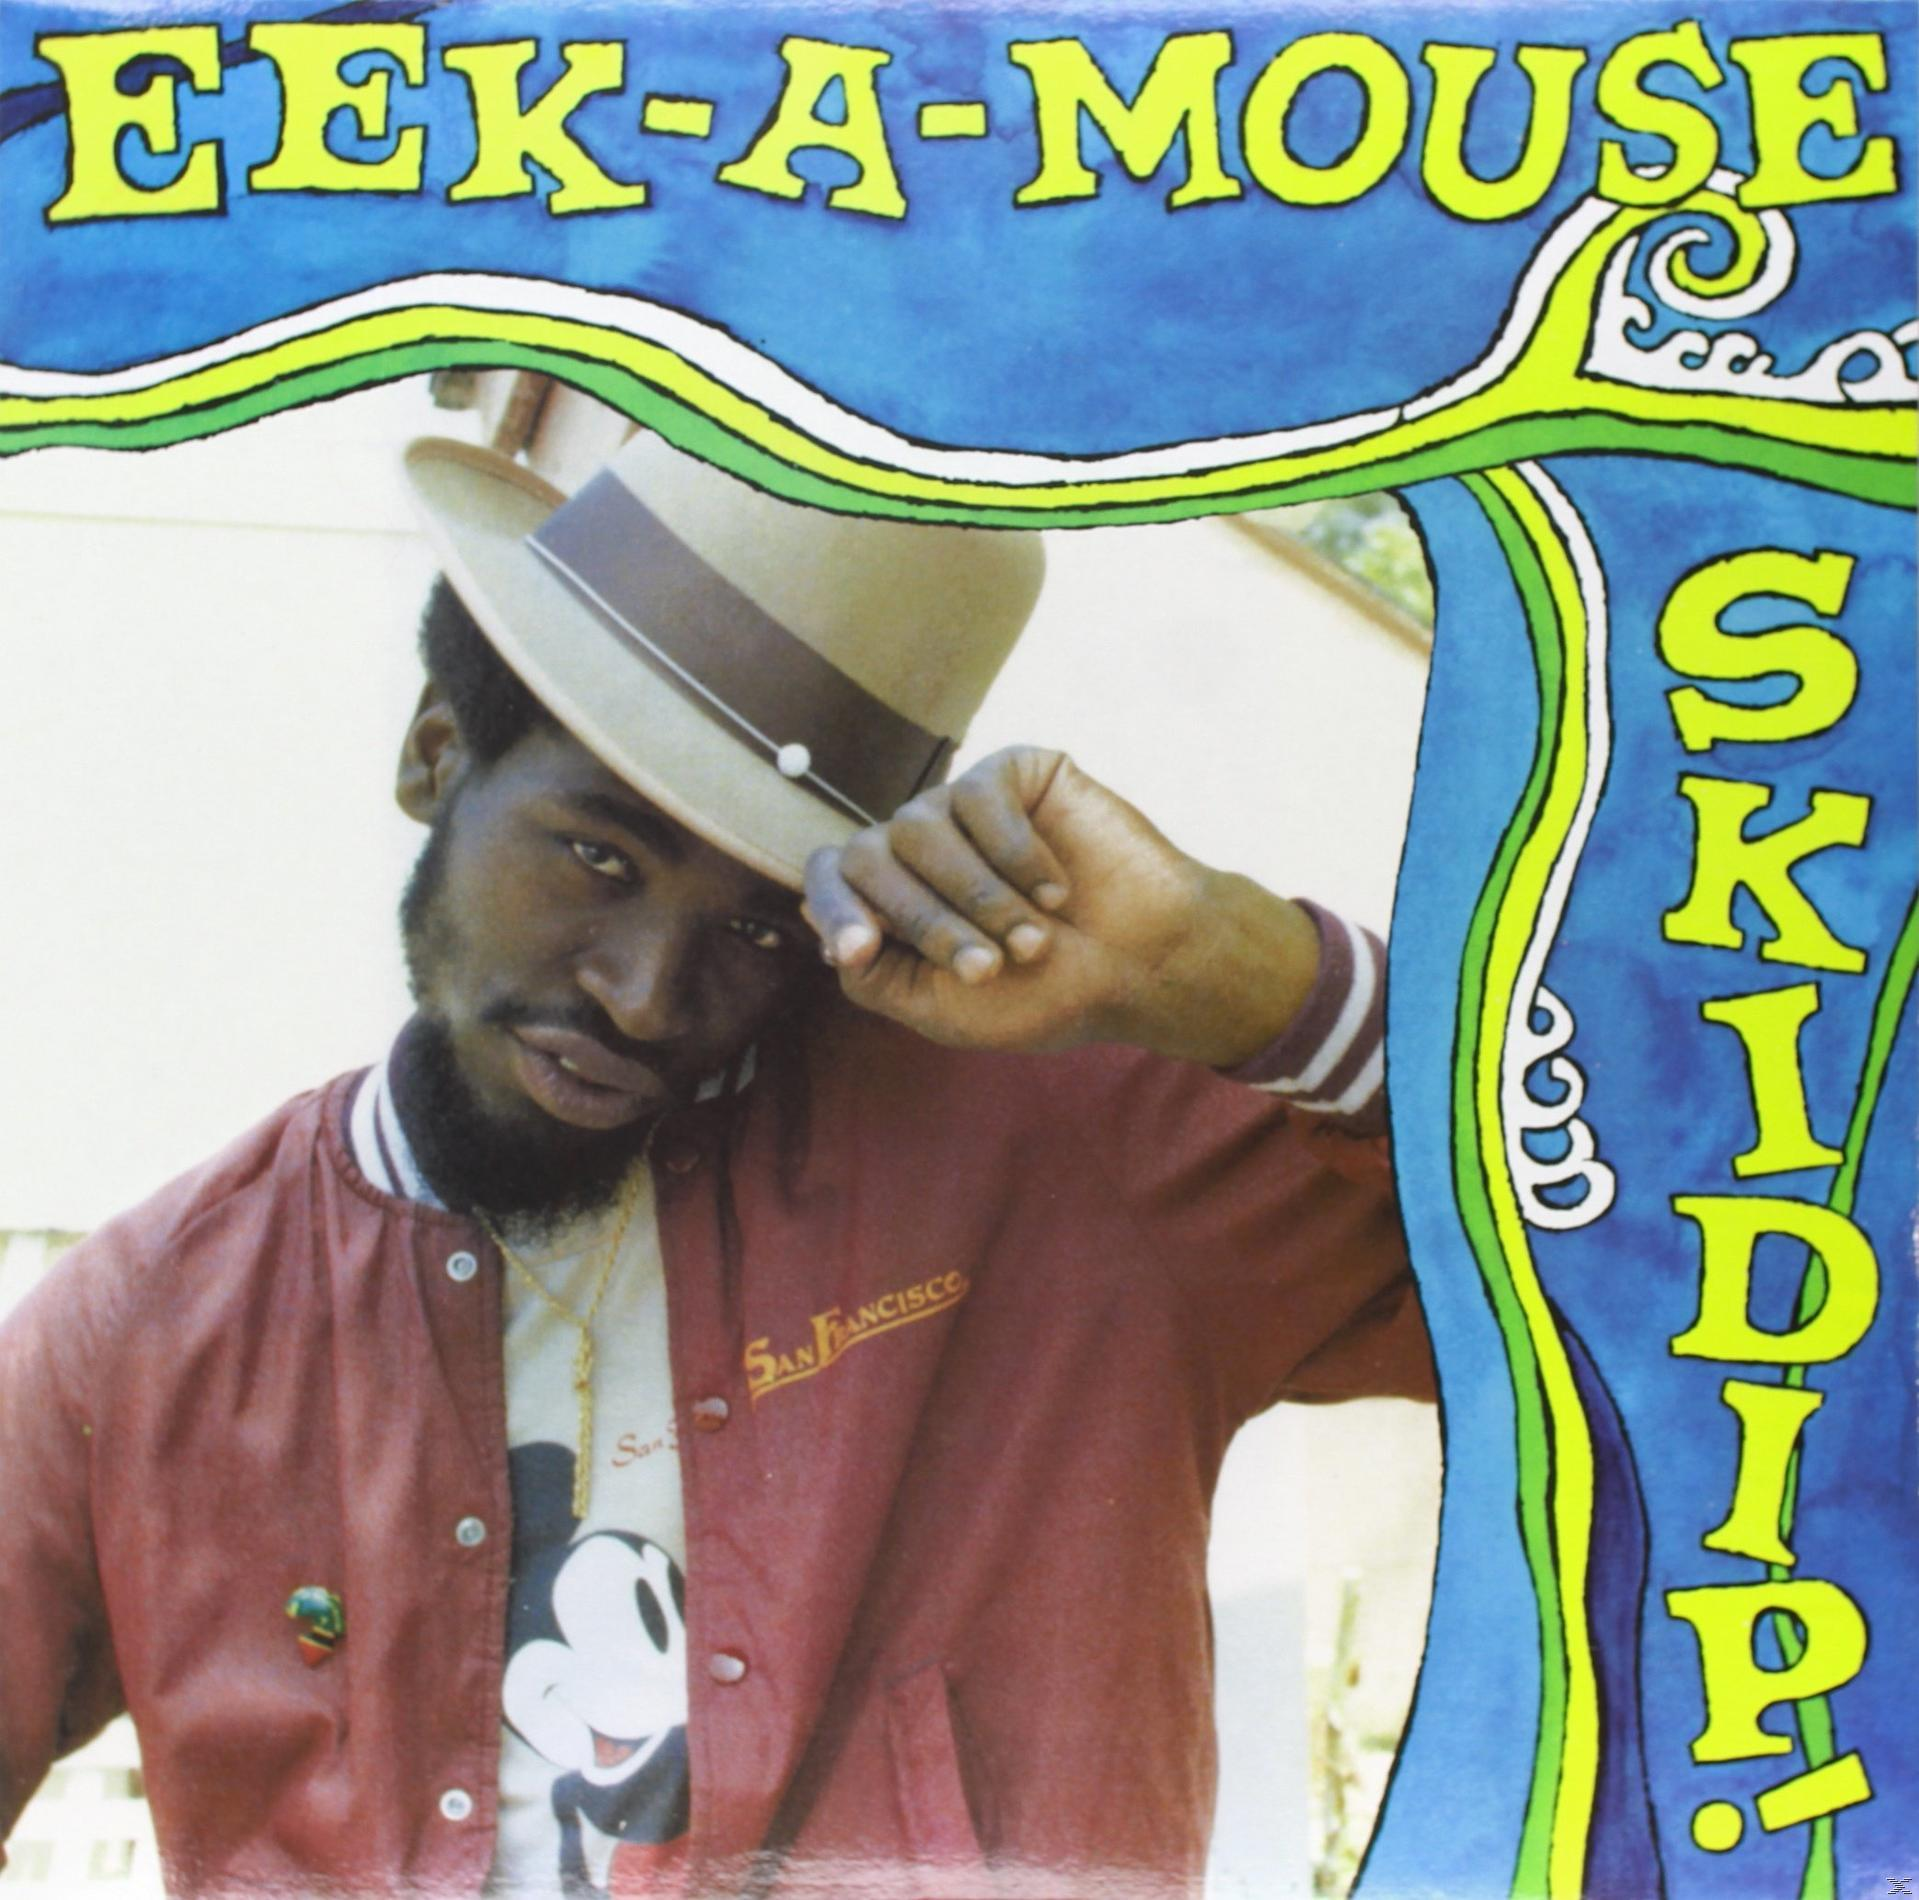 Eek-A-Mouse - - Skidip! (Vinyl)